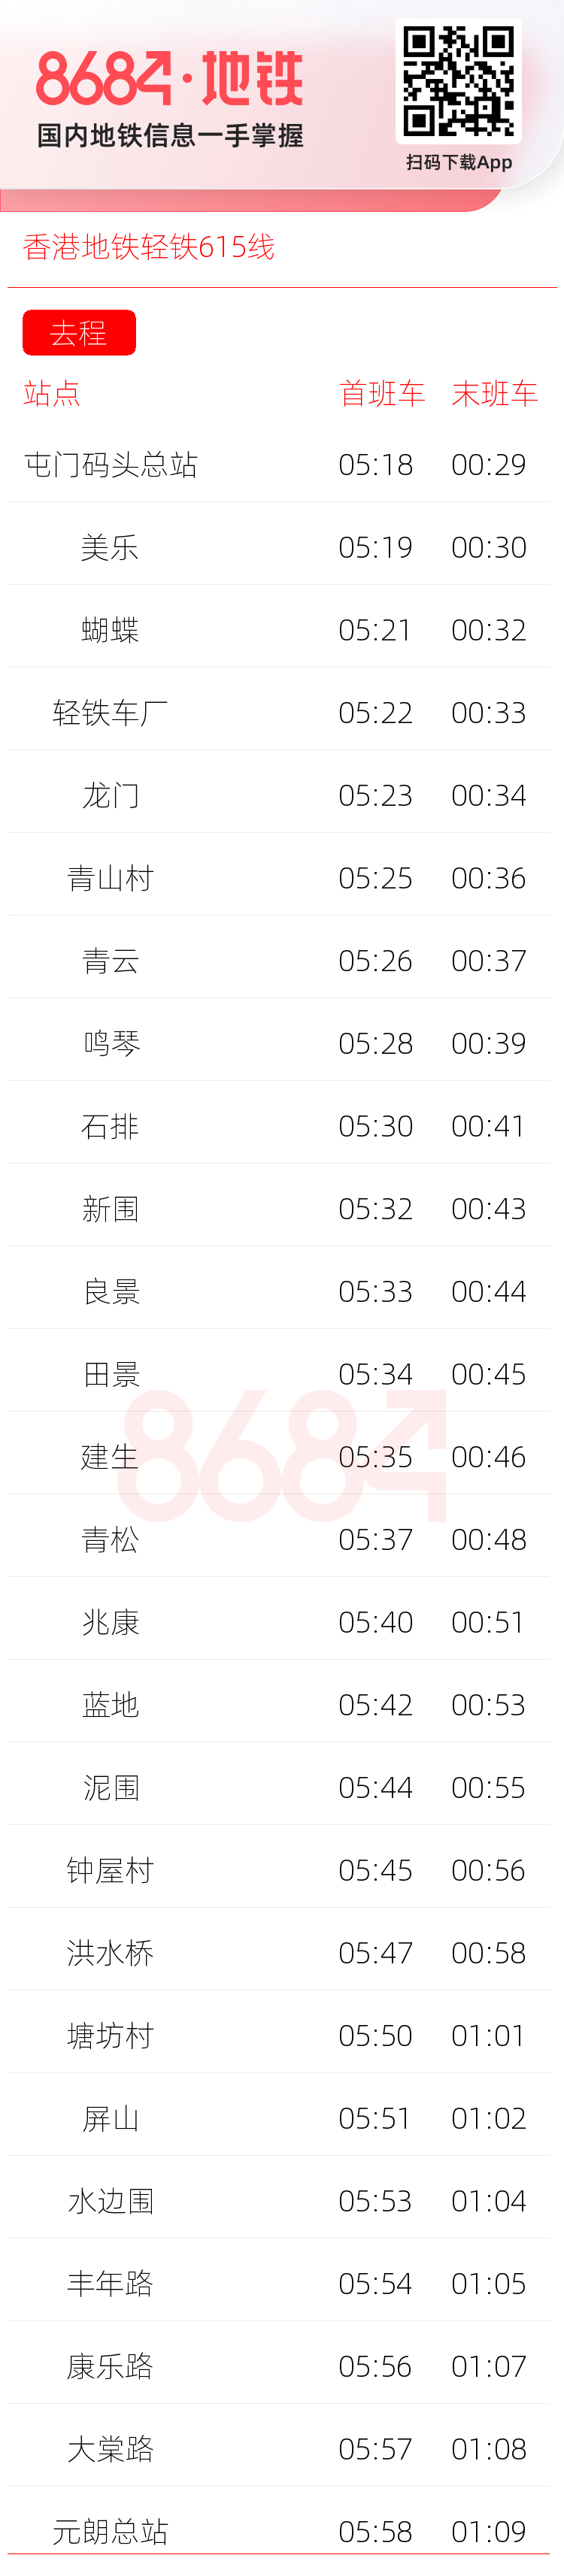 香港地铁轻铁615线运营时间表